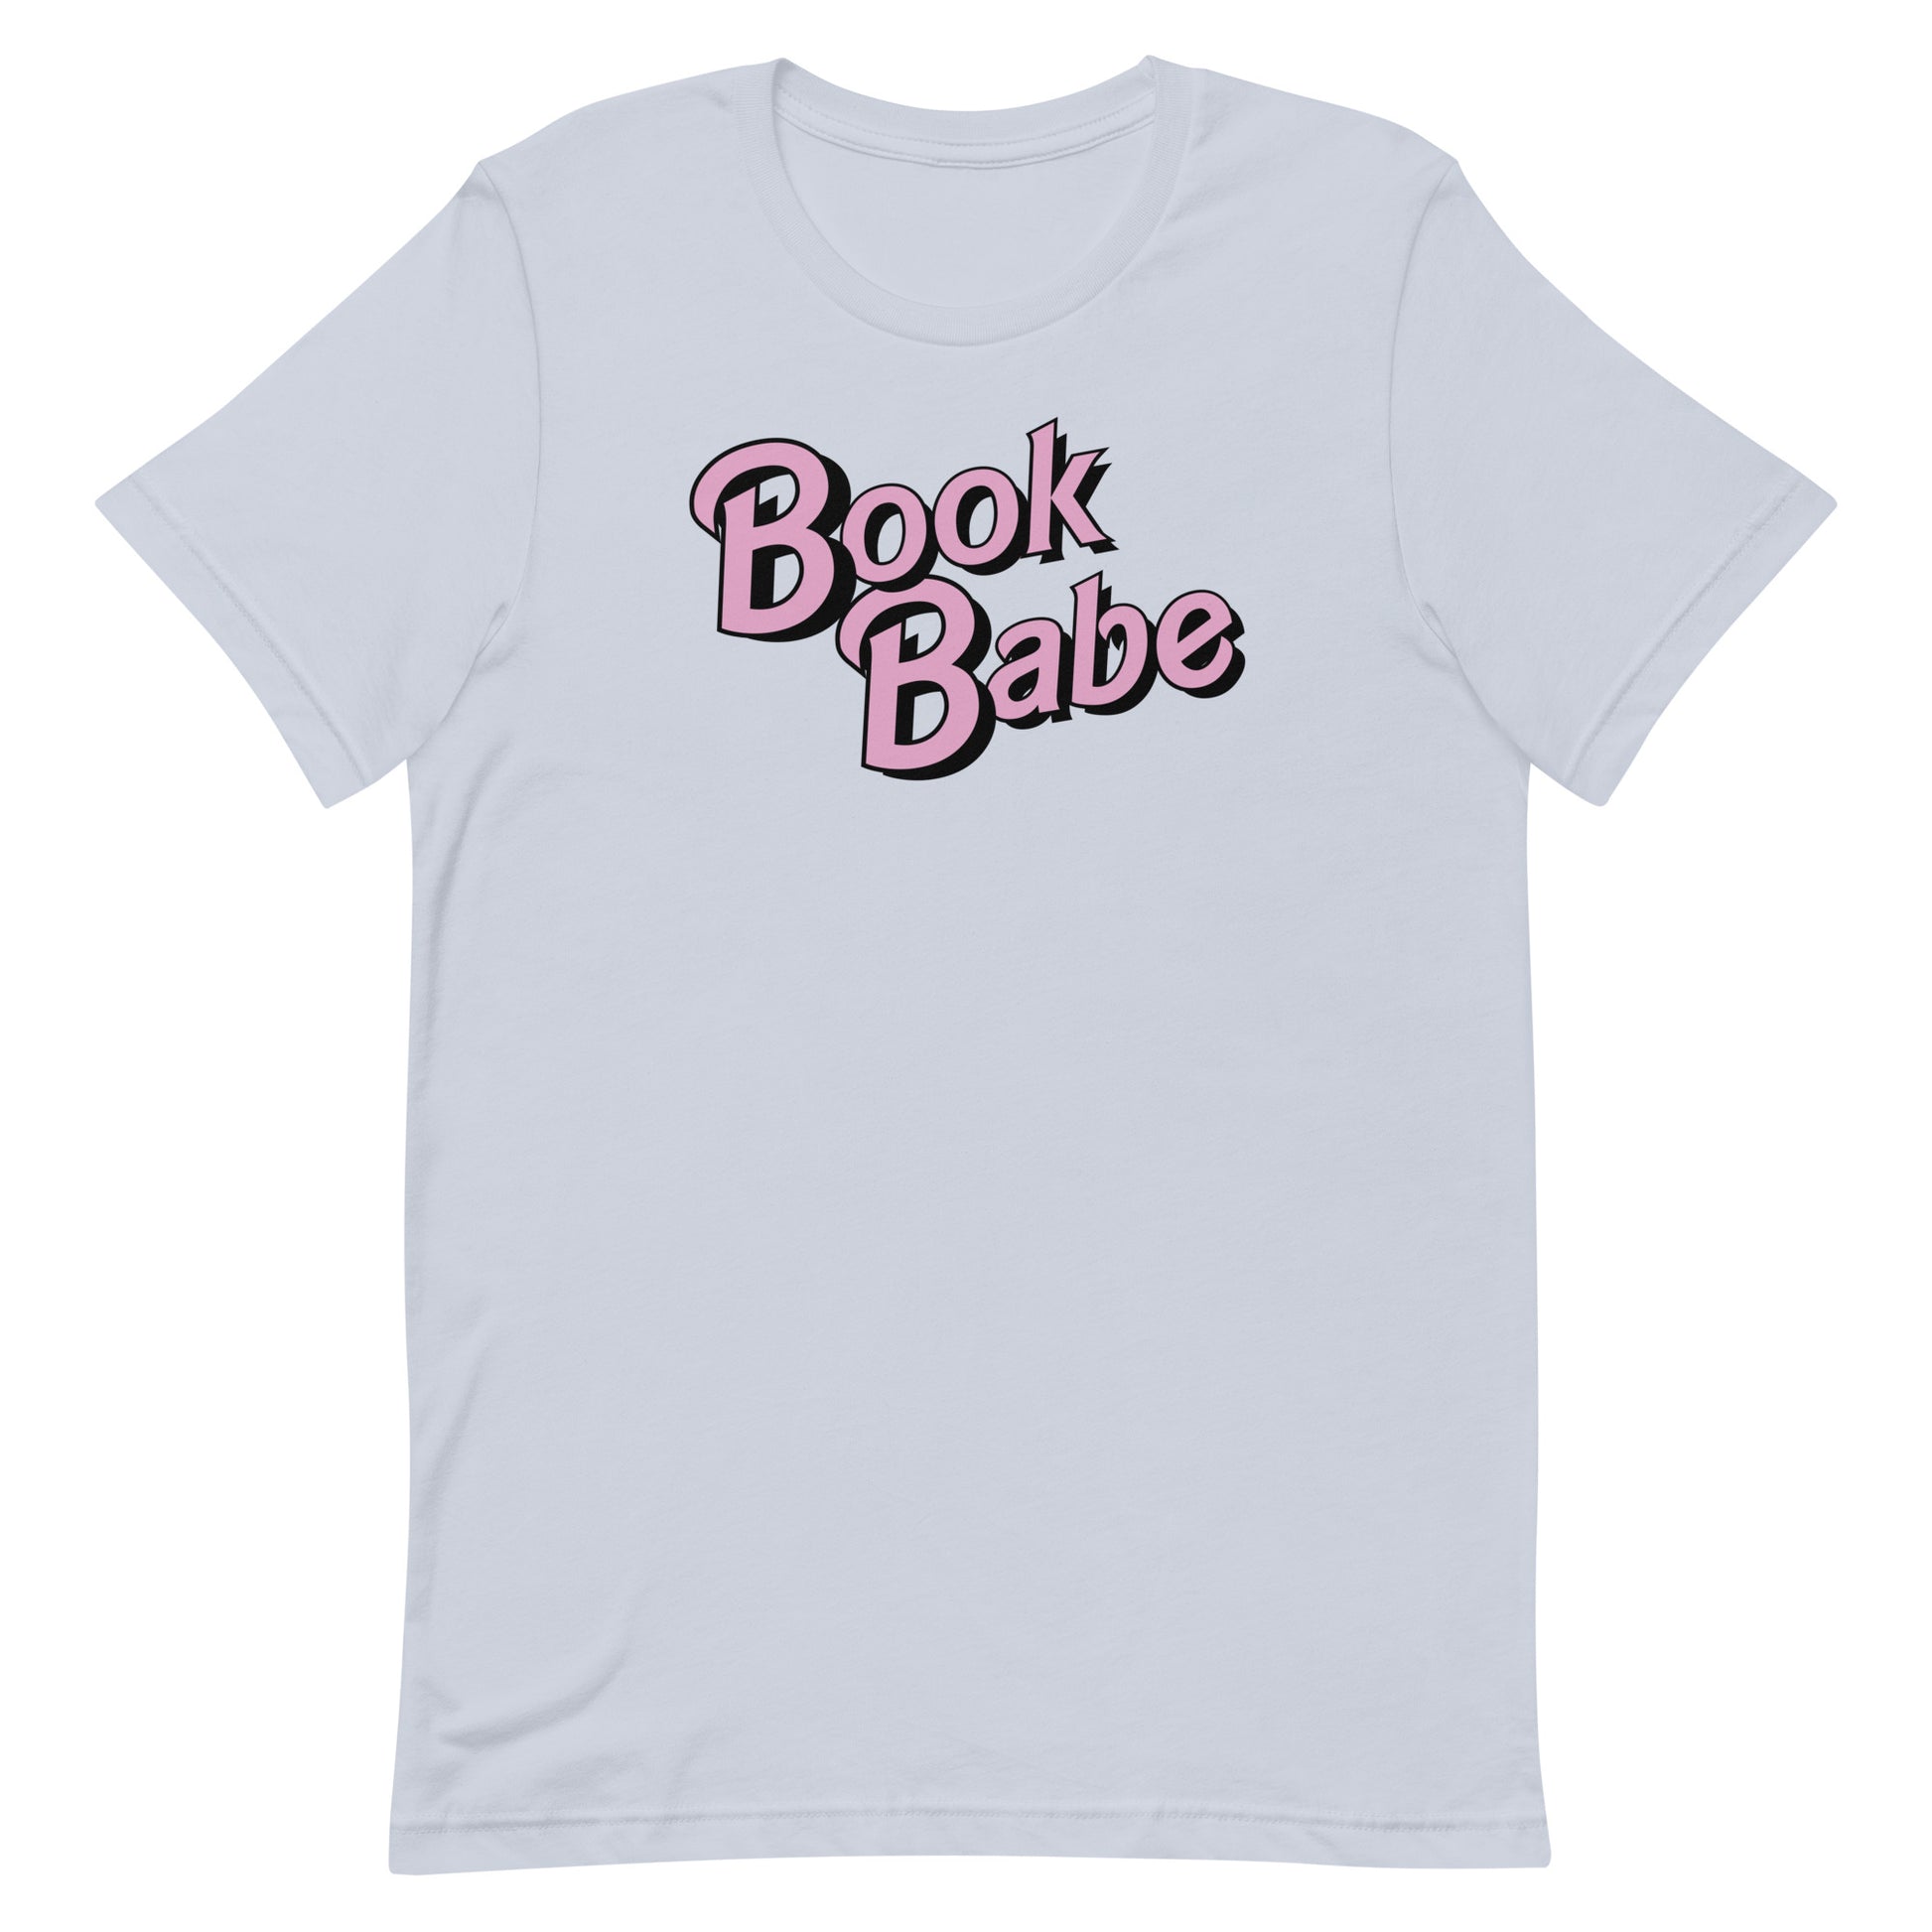 Book babe Barbie Tee Shirt 